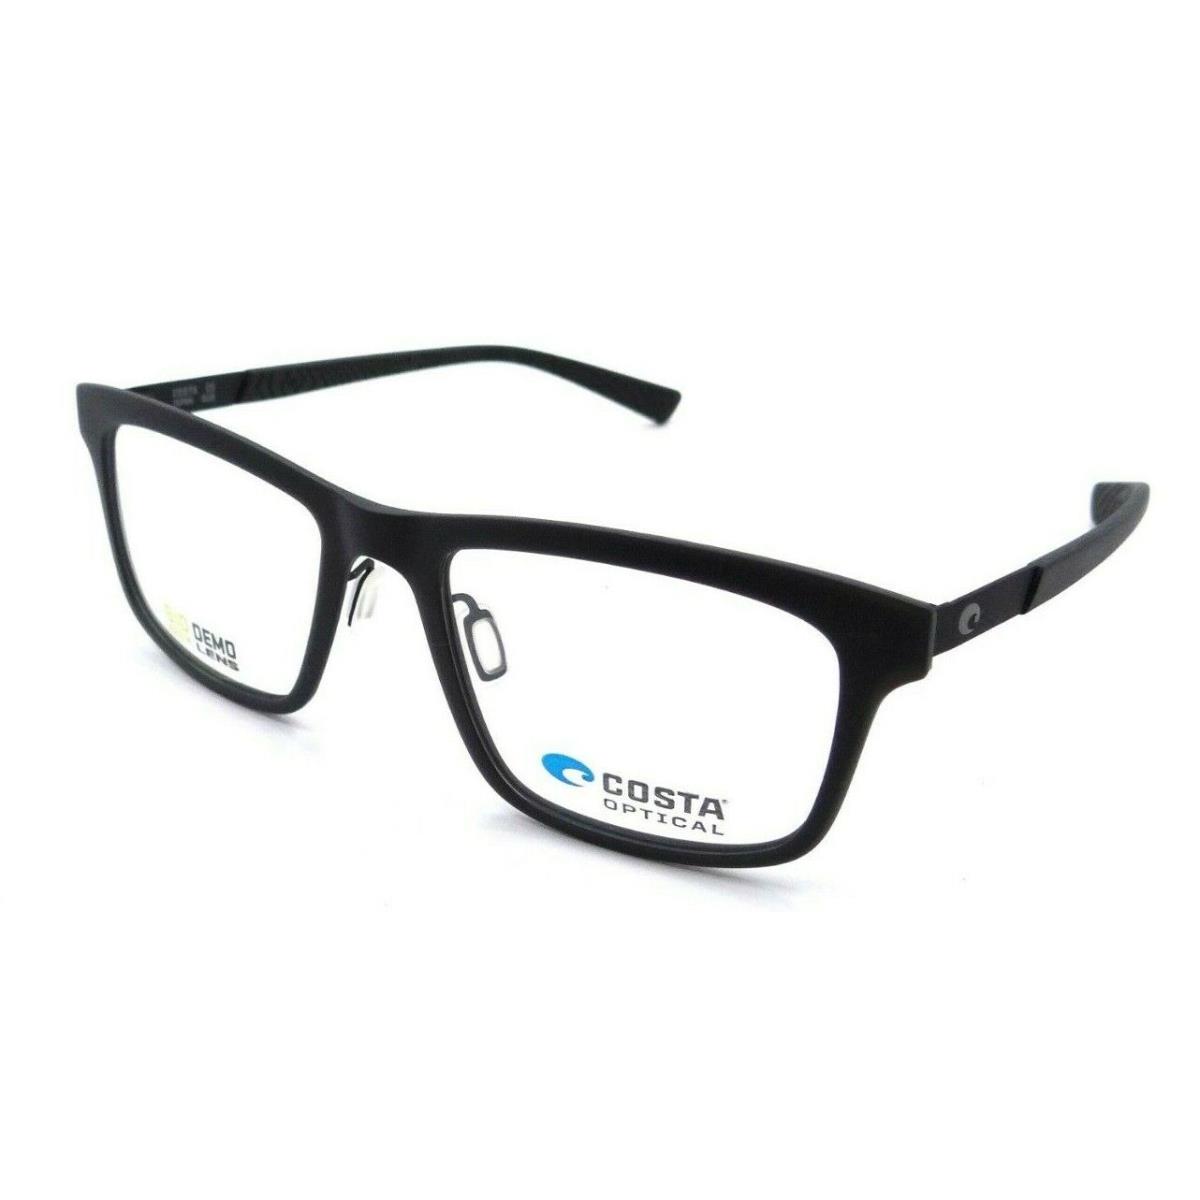 Costa Del Mar Eyeglasses Frames Pacific Rise 301 53-19-140 Translucent Dark Gray